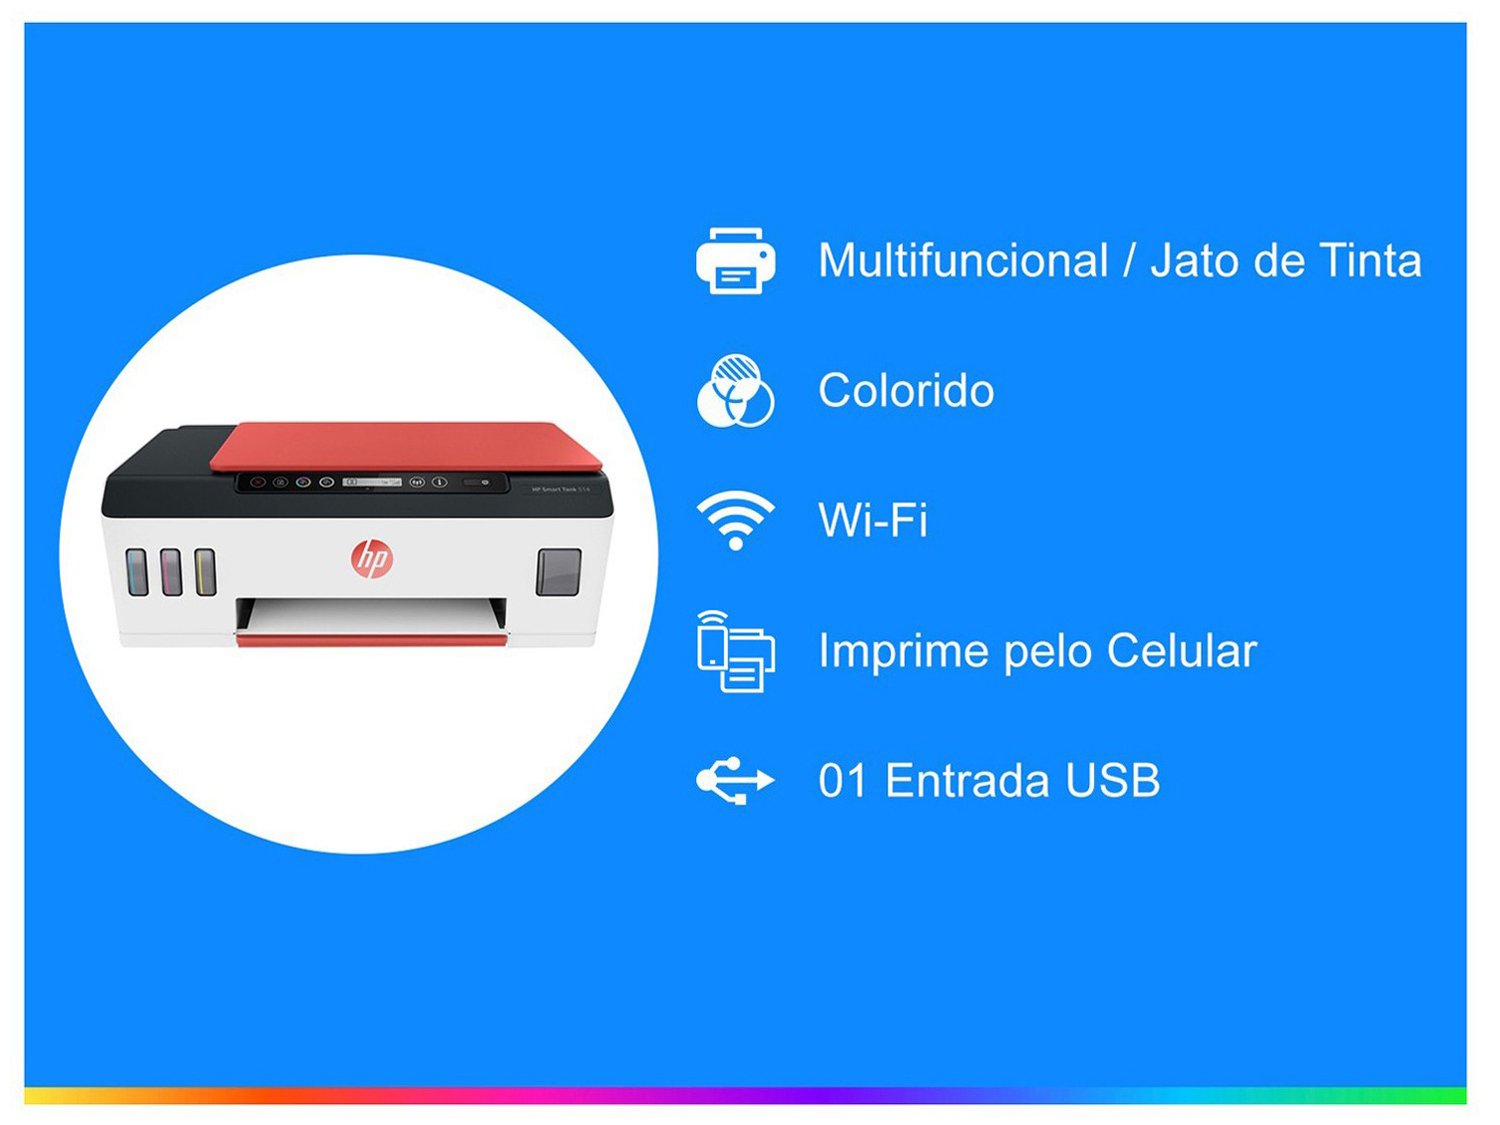 Impressora Multifuncional HP Smart Tank 514 - Tanque de Tinta Colorida Wi-Fi USB - Bivolt - 1